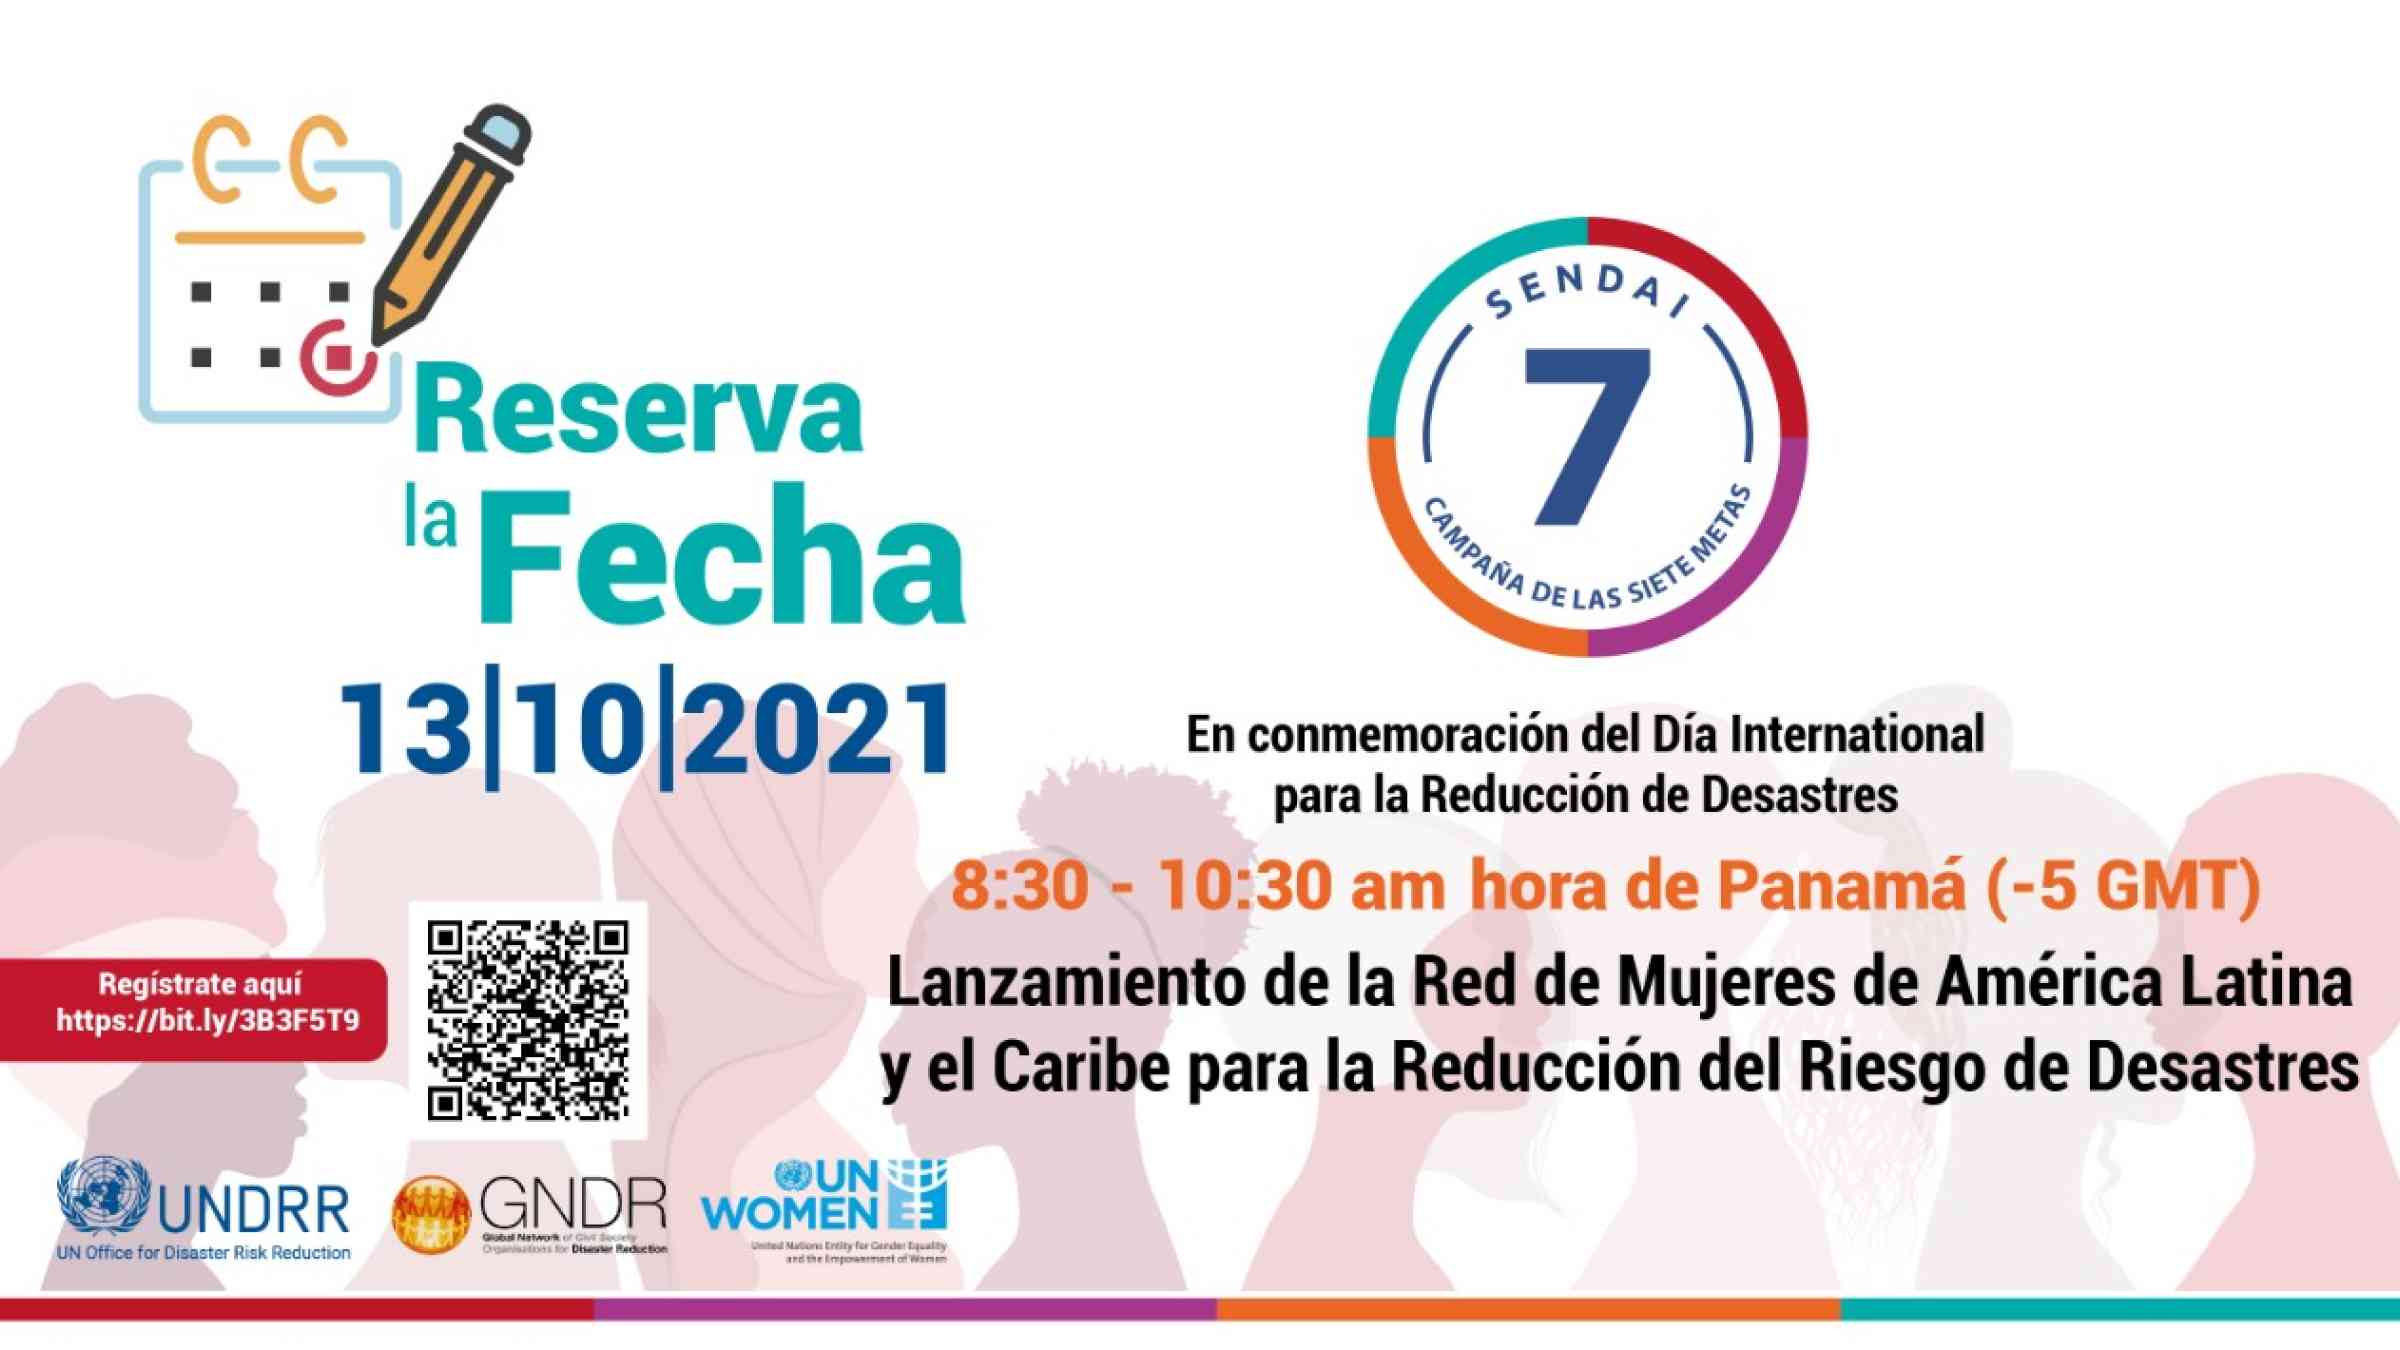 Lanzamiento de la Red de Mujeres de América Latina y el Caribe para la Reducción del Riesgo de Desastres